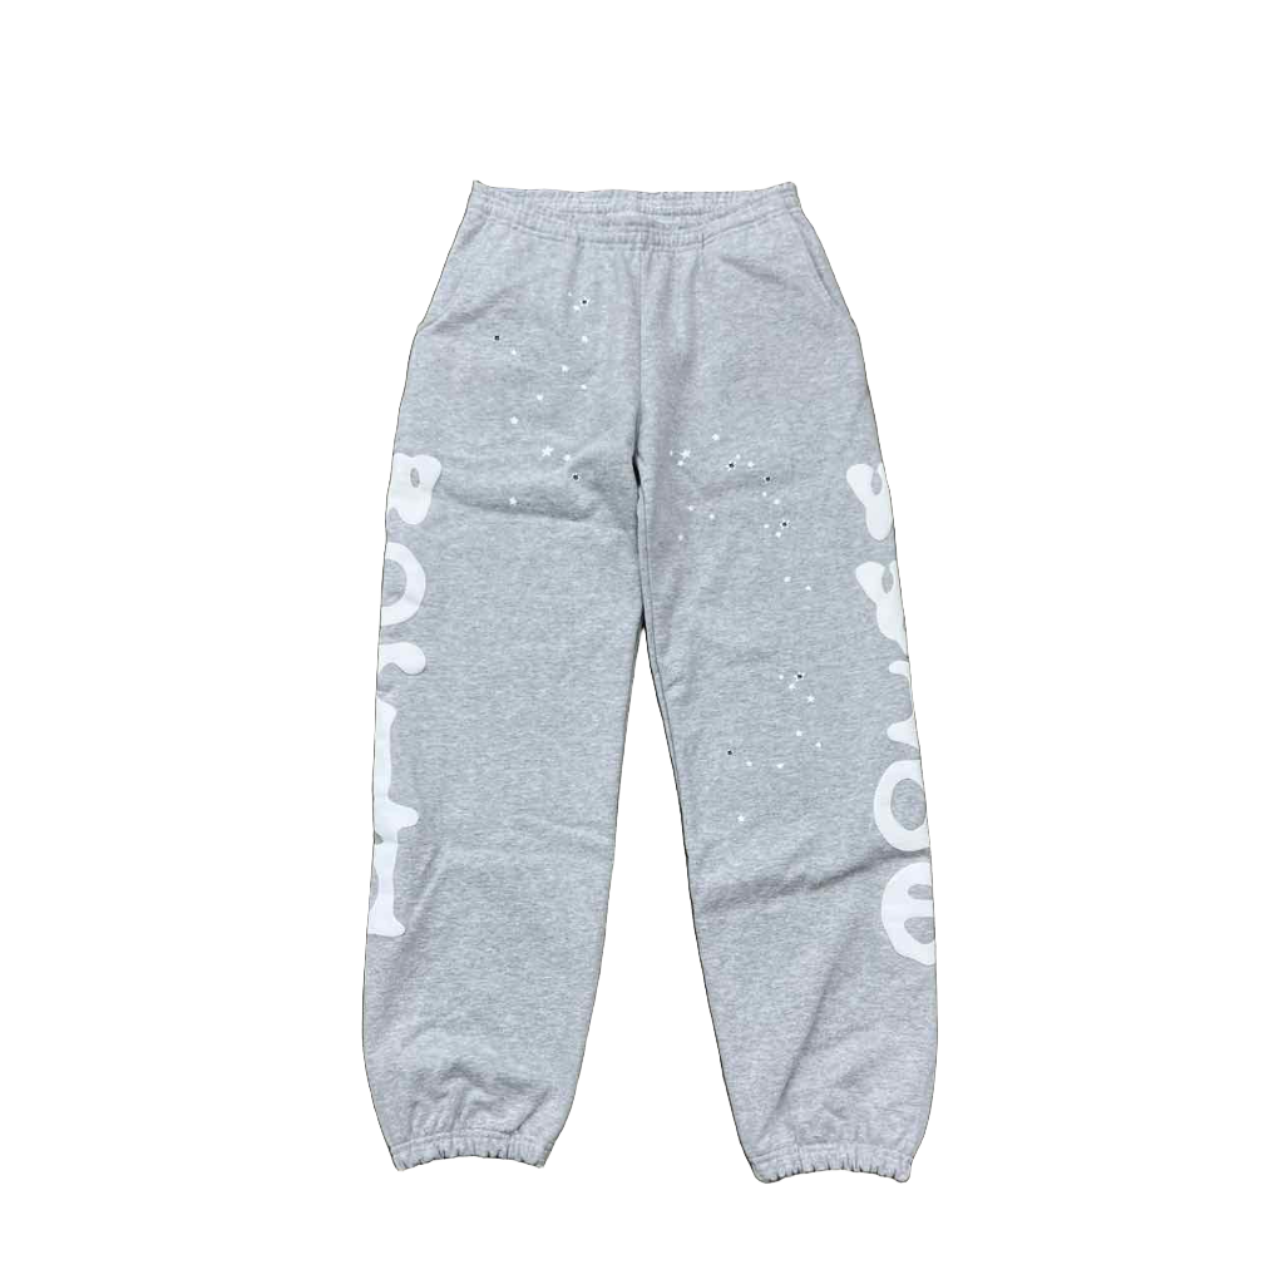 Sp5der Sweatpants &quot;BELUGA&quot; Grey New Size XL